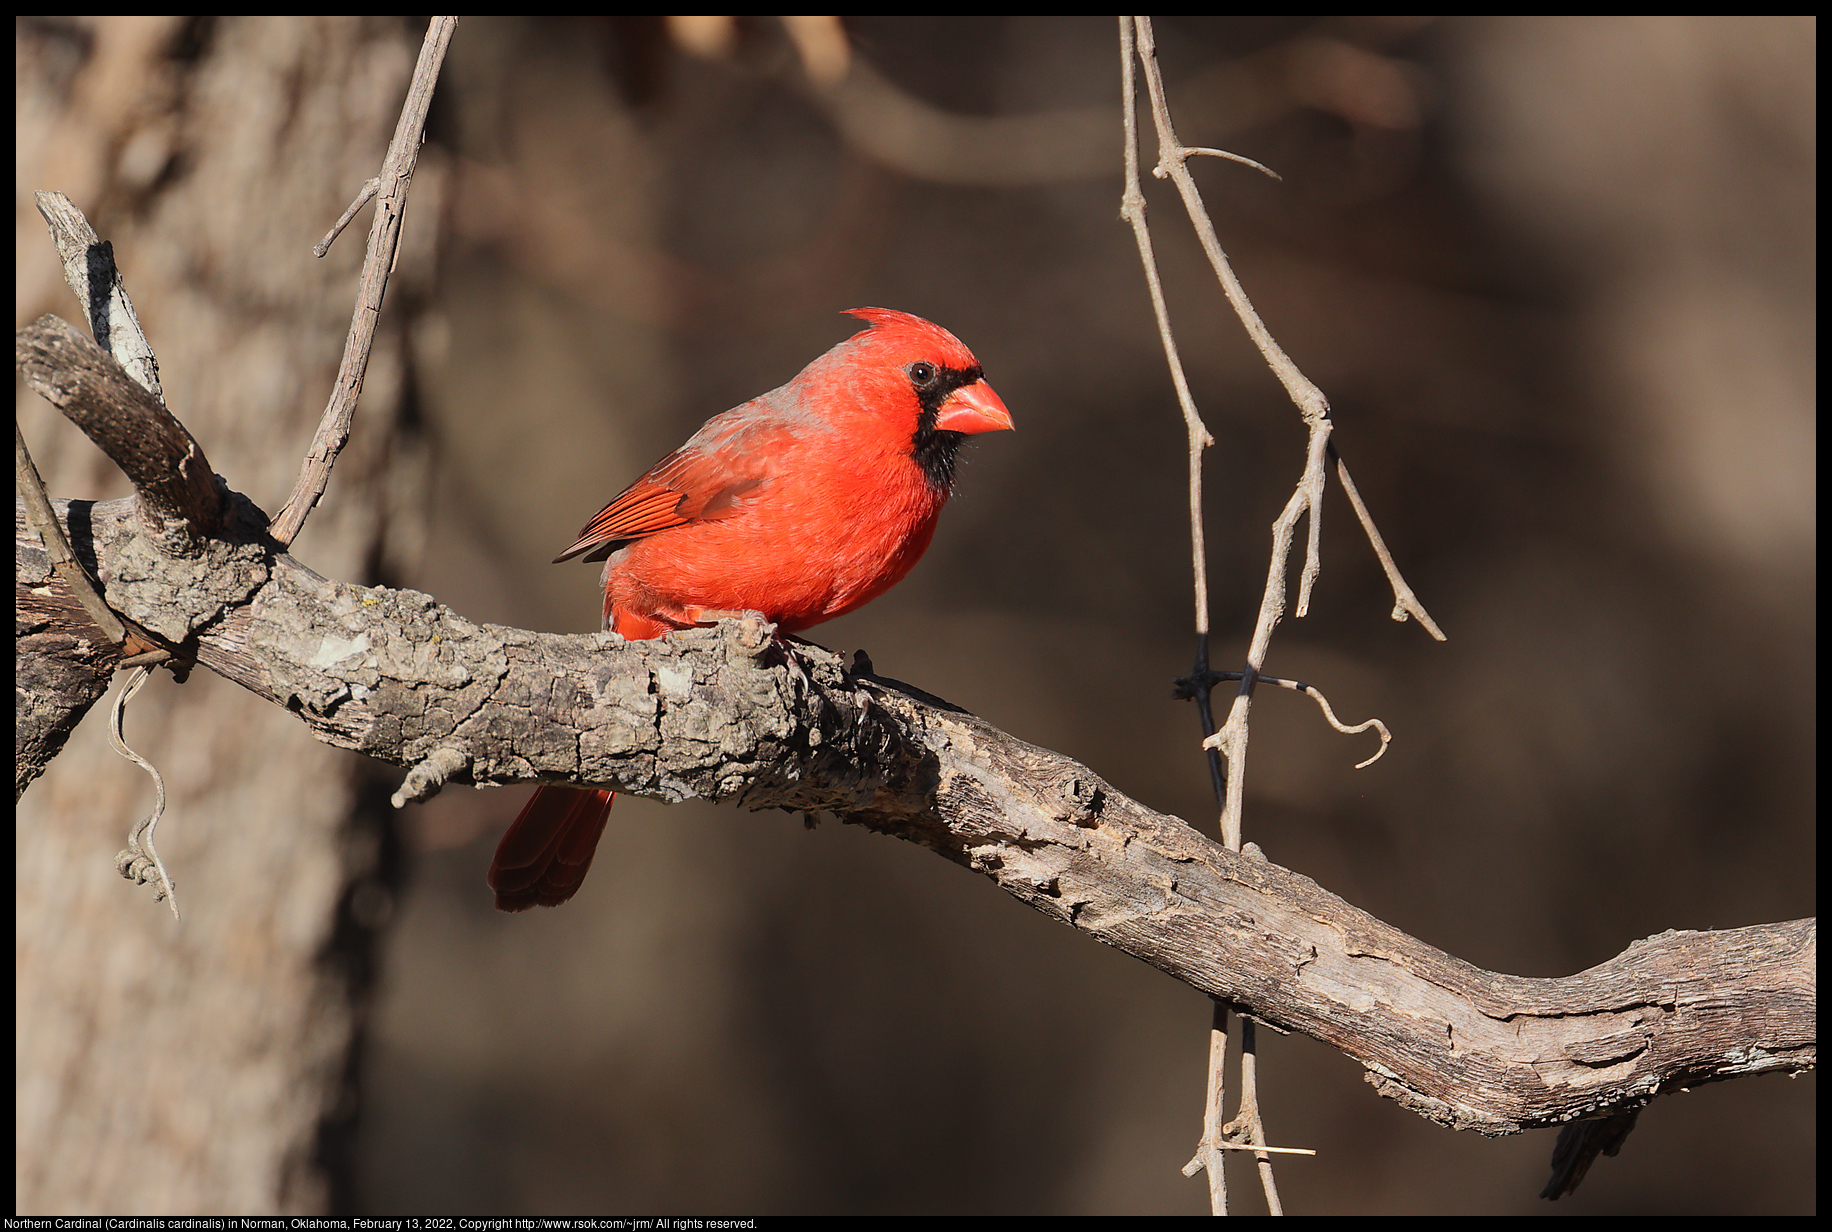 Northern Cardinal (Cardinalis cardinalis) in Norman, Oklahoma, February 13, 2022